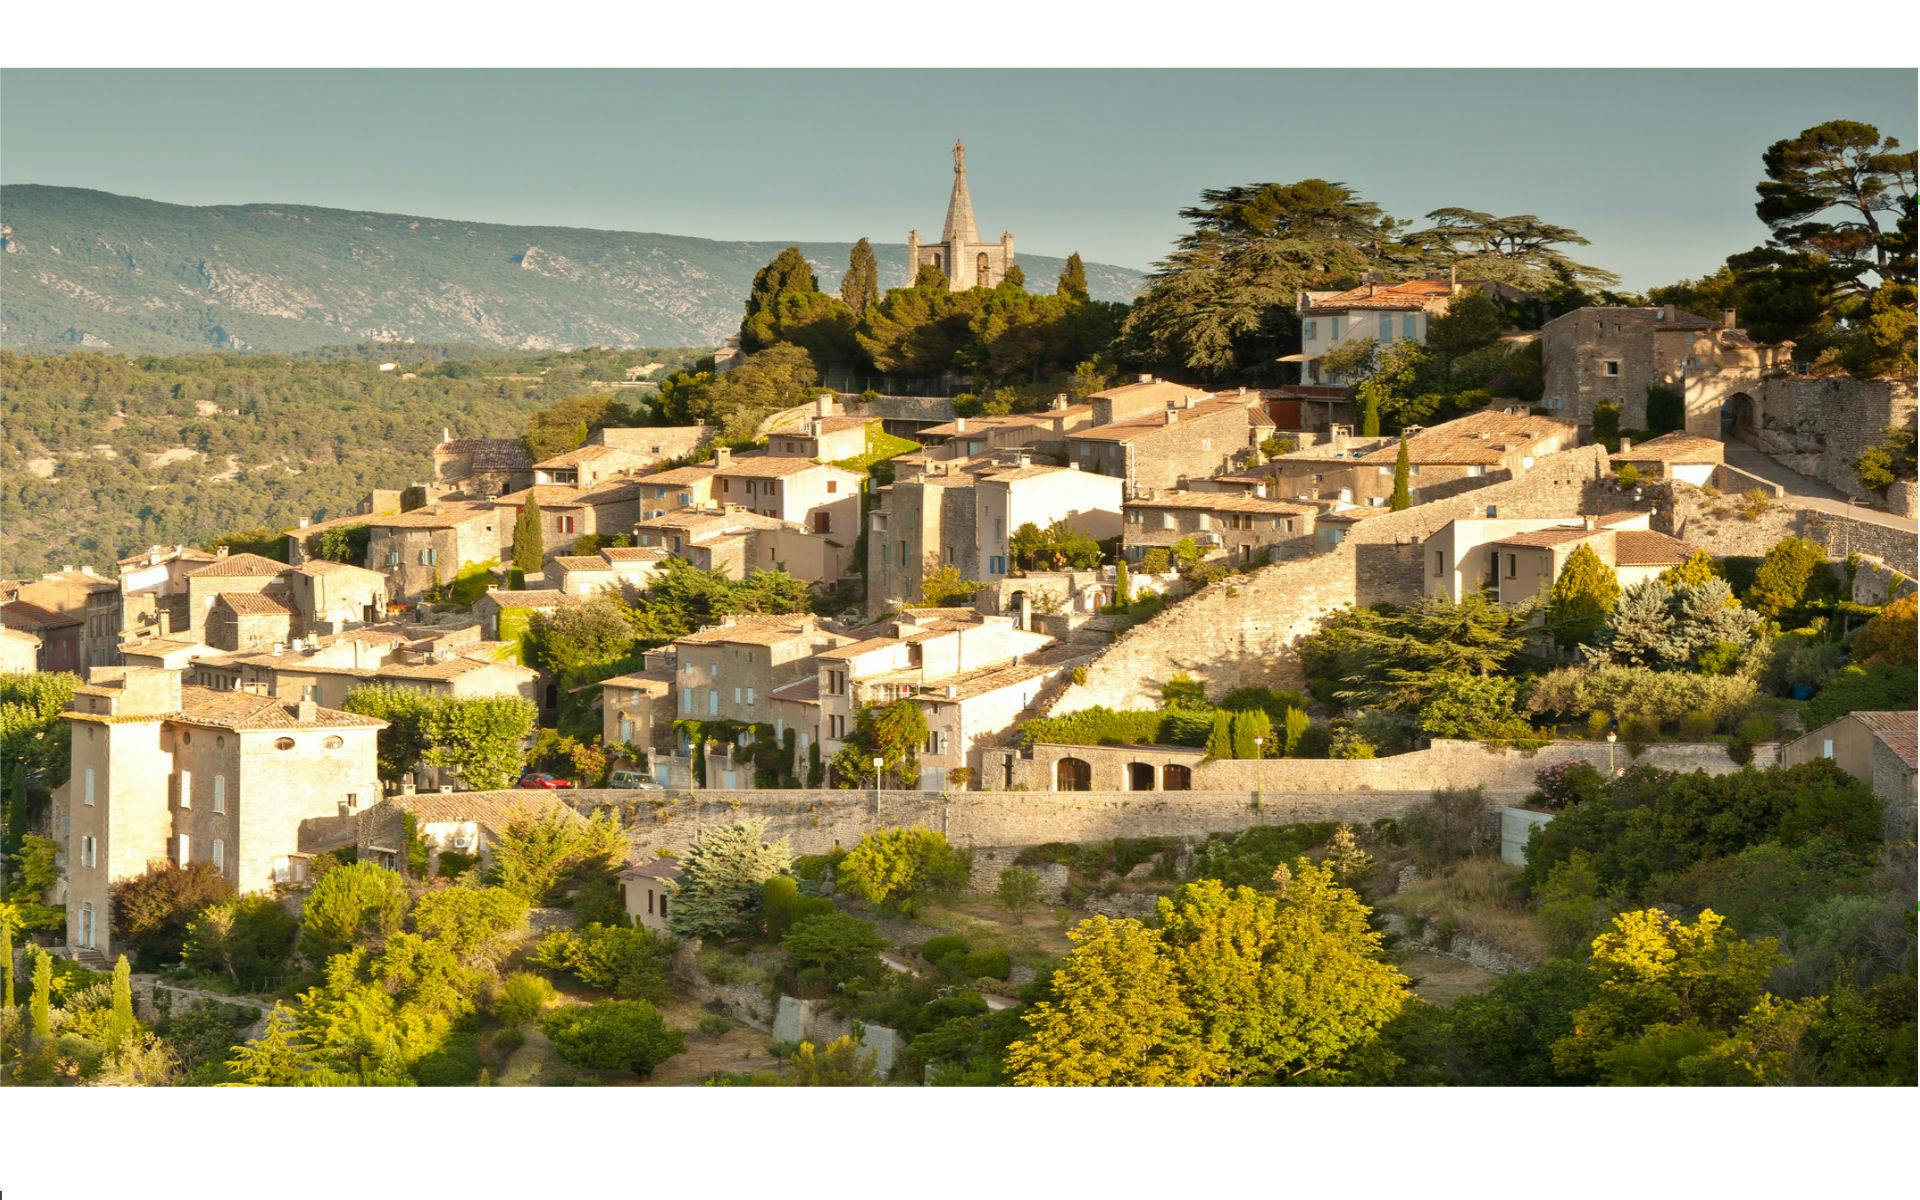 Tour van een halve dag in de heuveldorpjes in de Luberon vanuit Aix en Provence